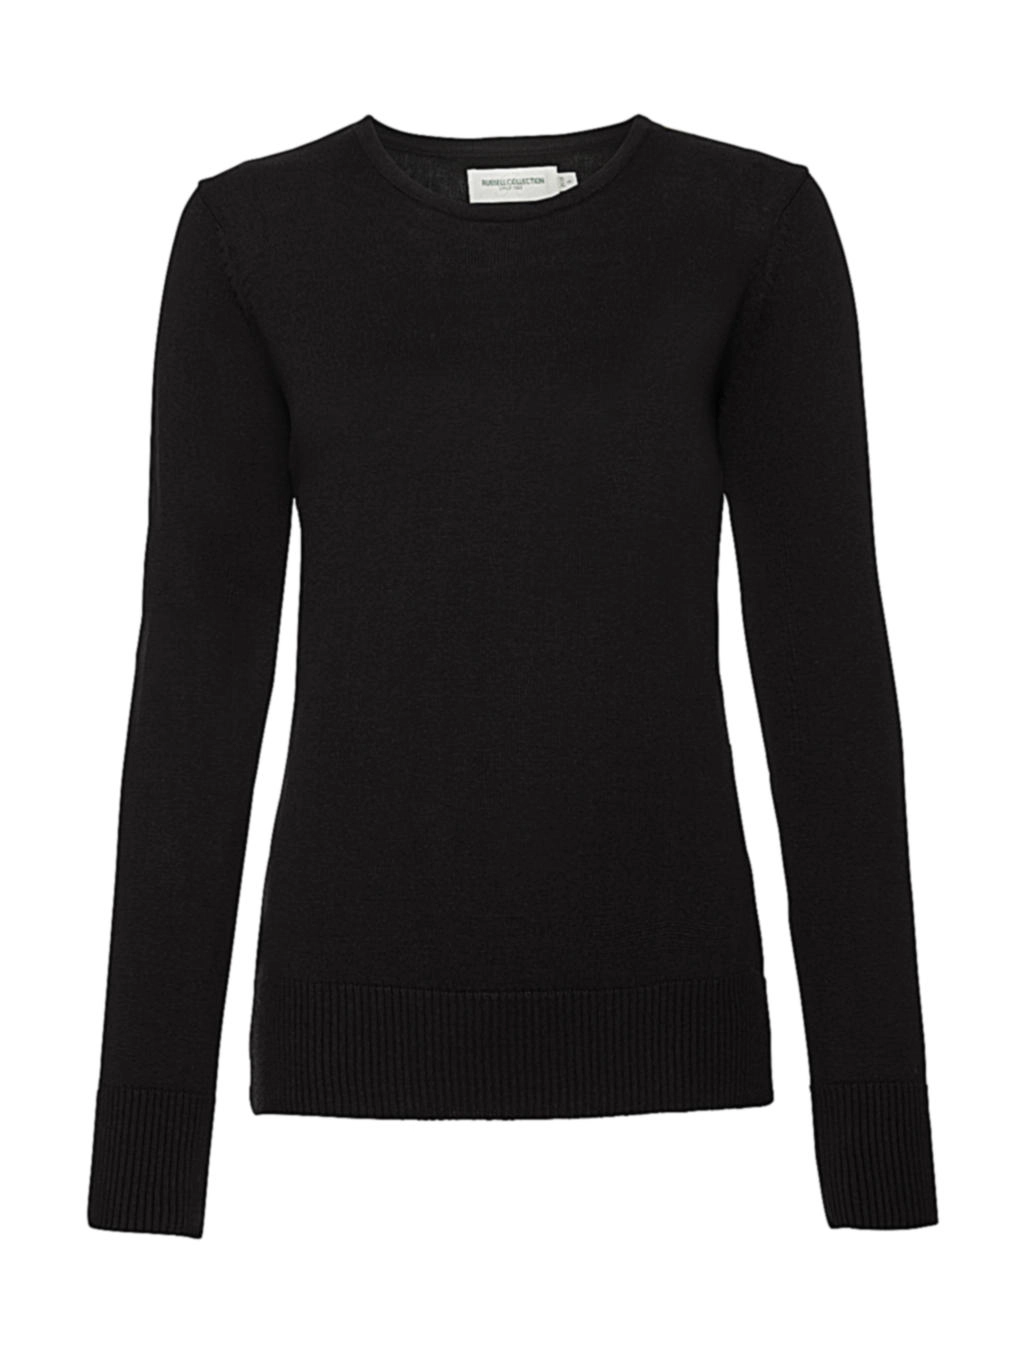 Ladies` Crew Neck Knitted Pullover zum Besticken und Bedrucken in der Farbe Black mit Ihren Logo, Schriftzug oder Motiv.